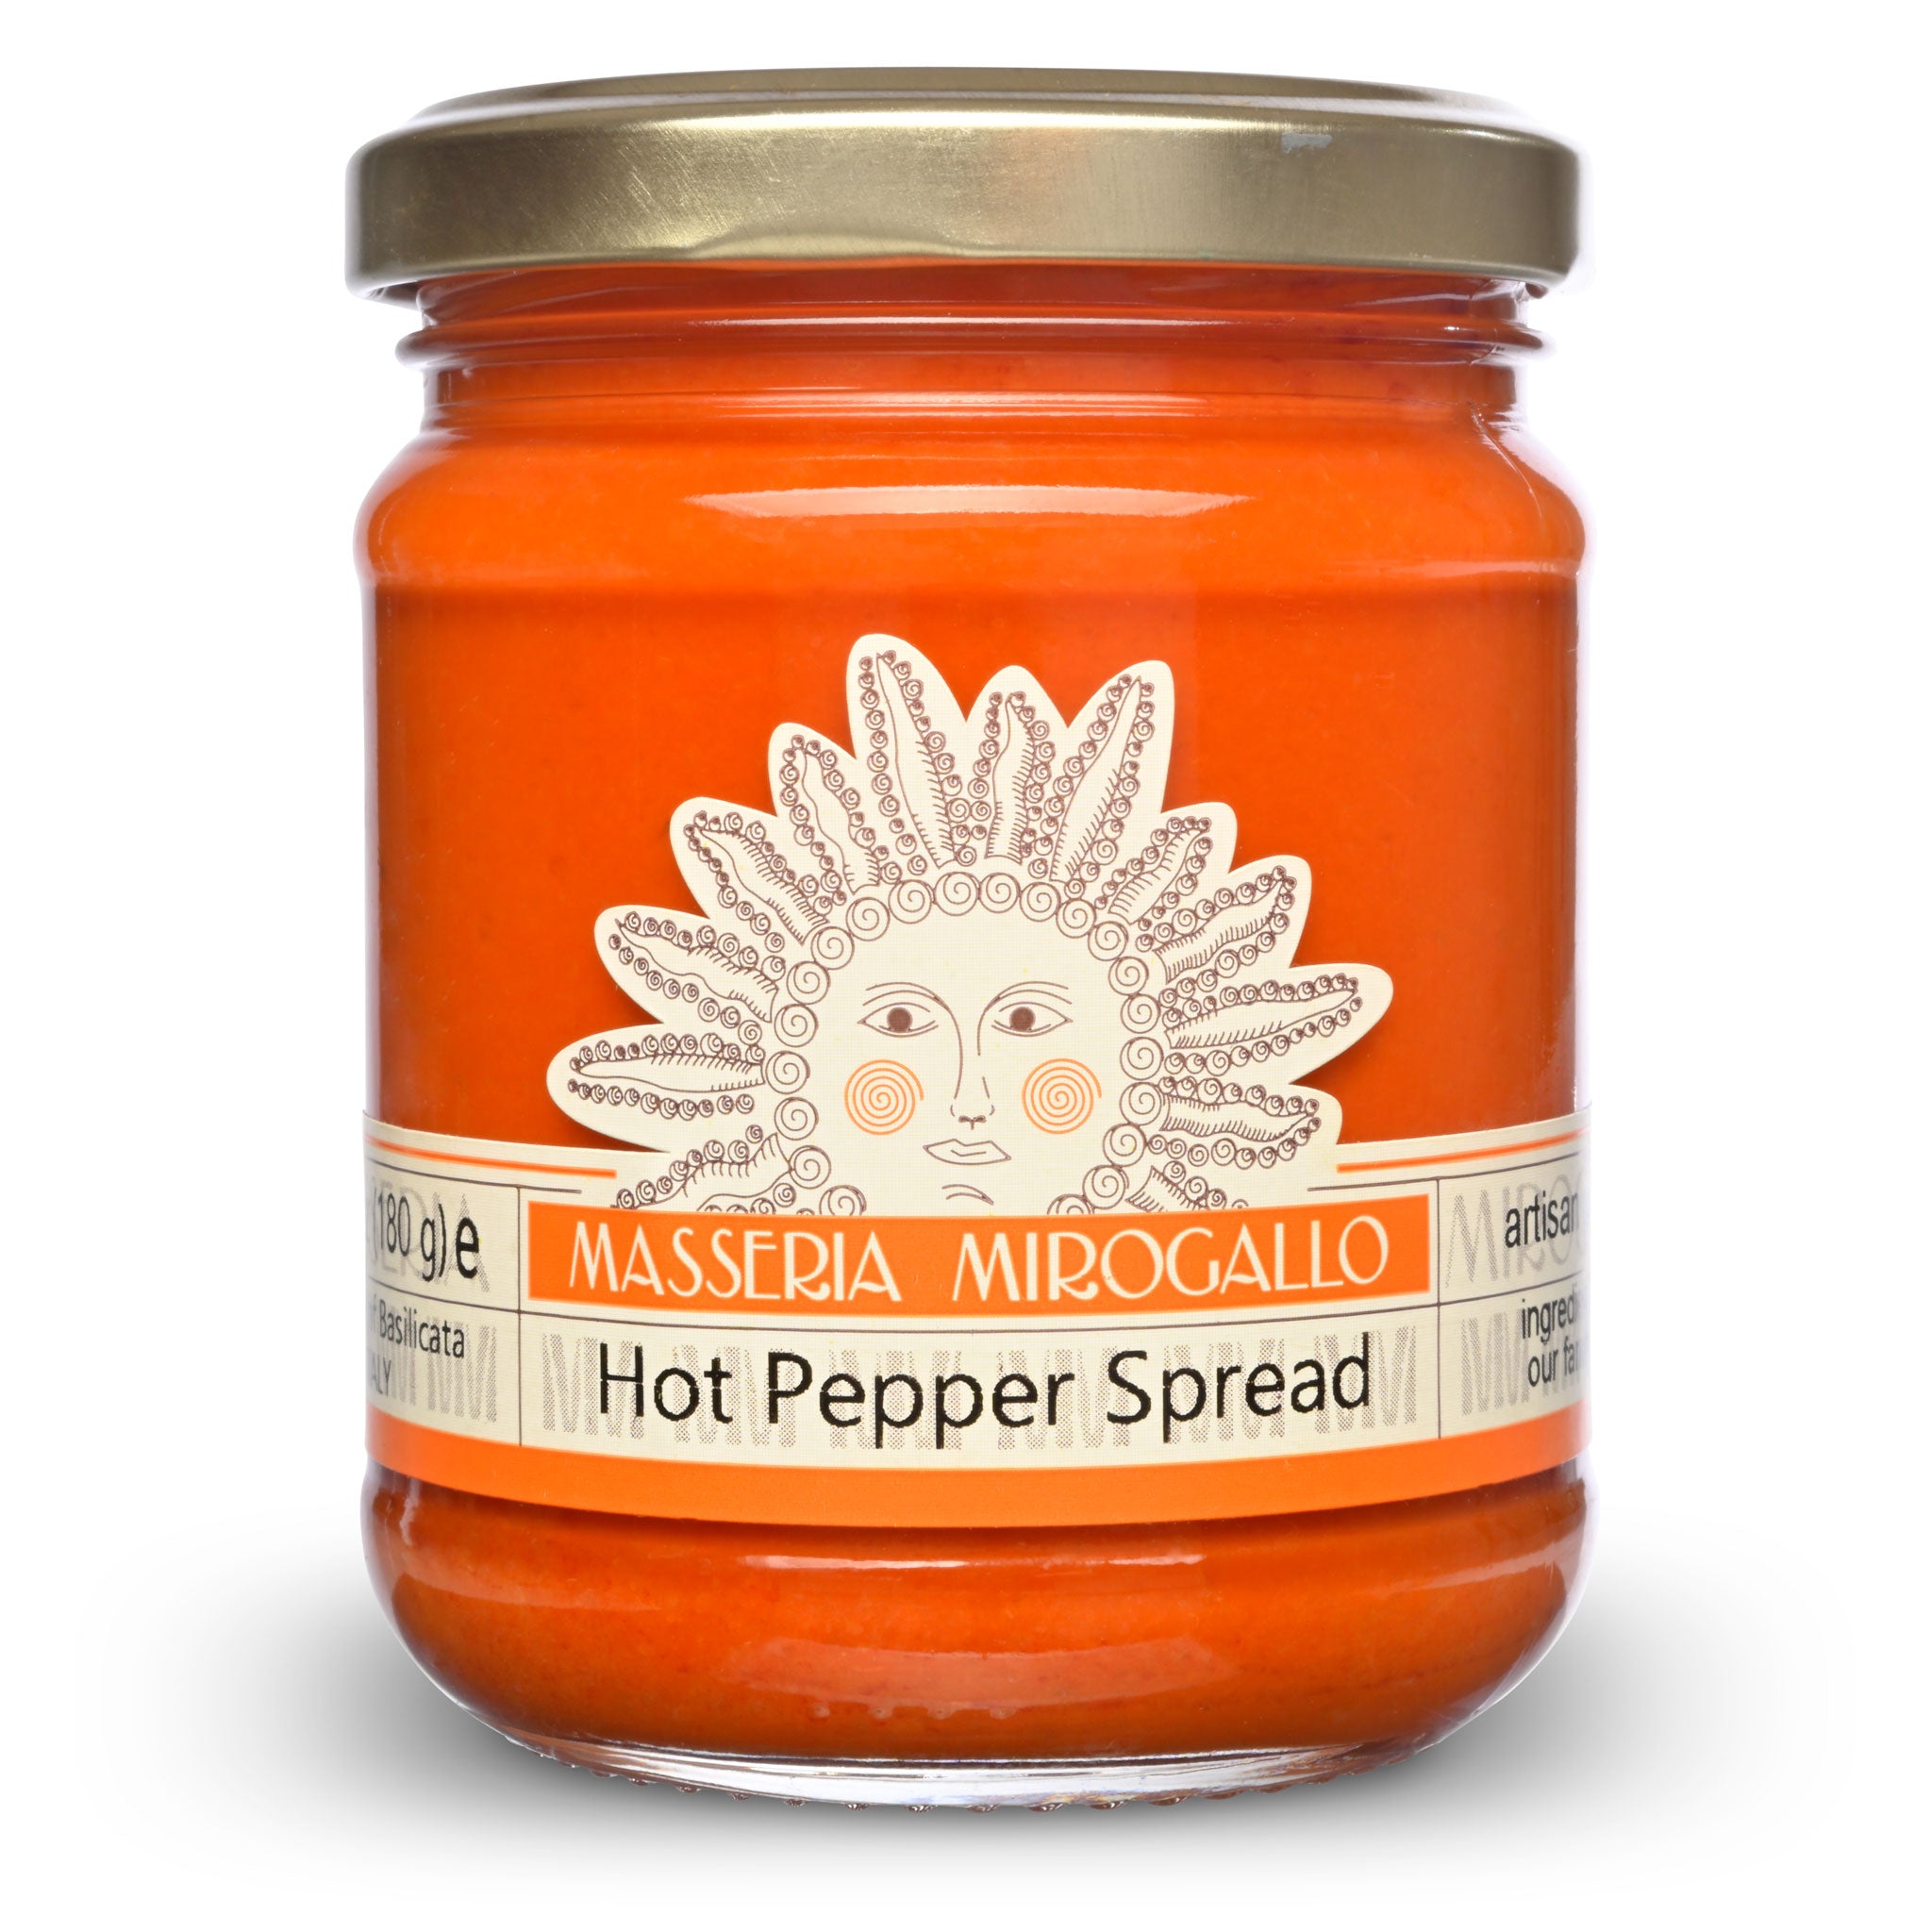 Jar of Masseria Mirogallo Hot Pepper Spread